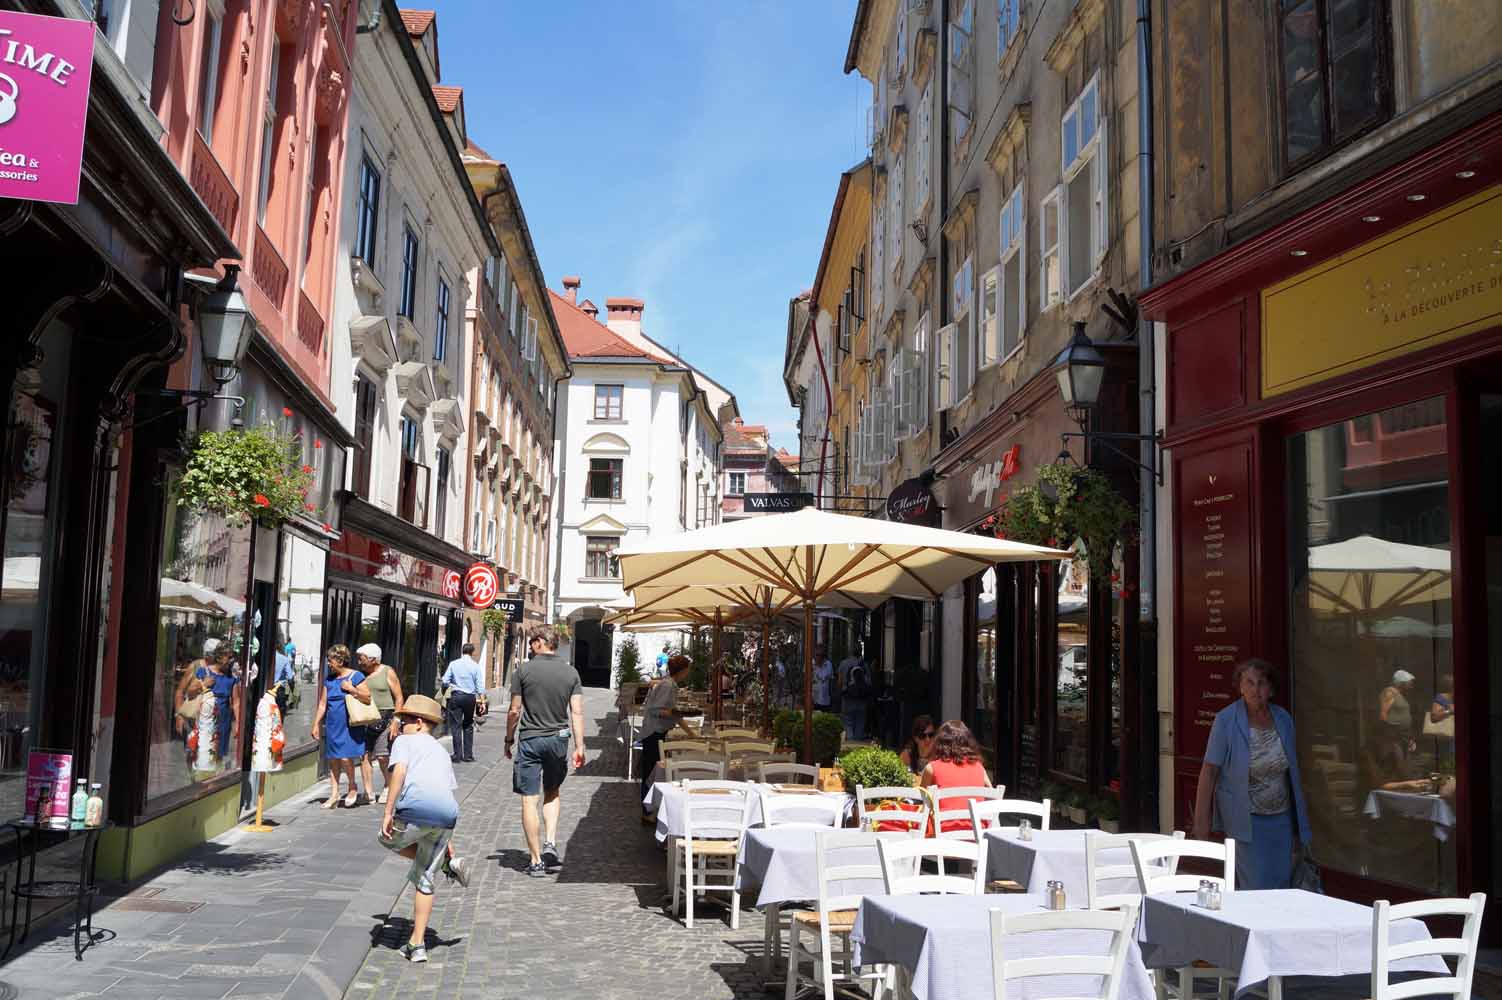 Ljubljana Altstadt